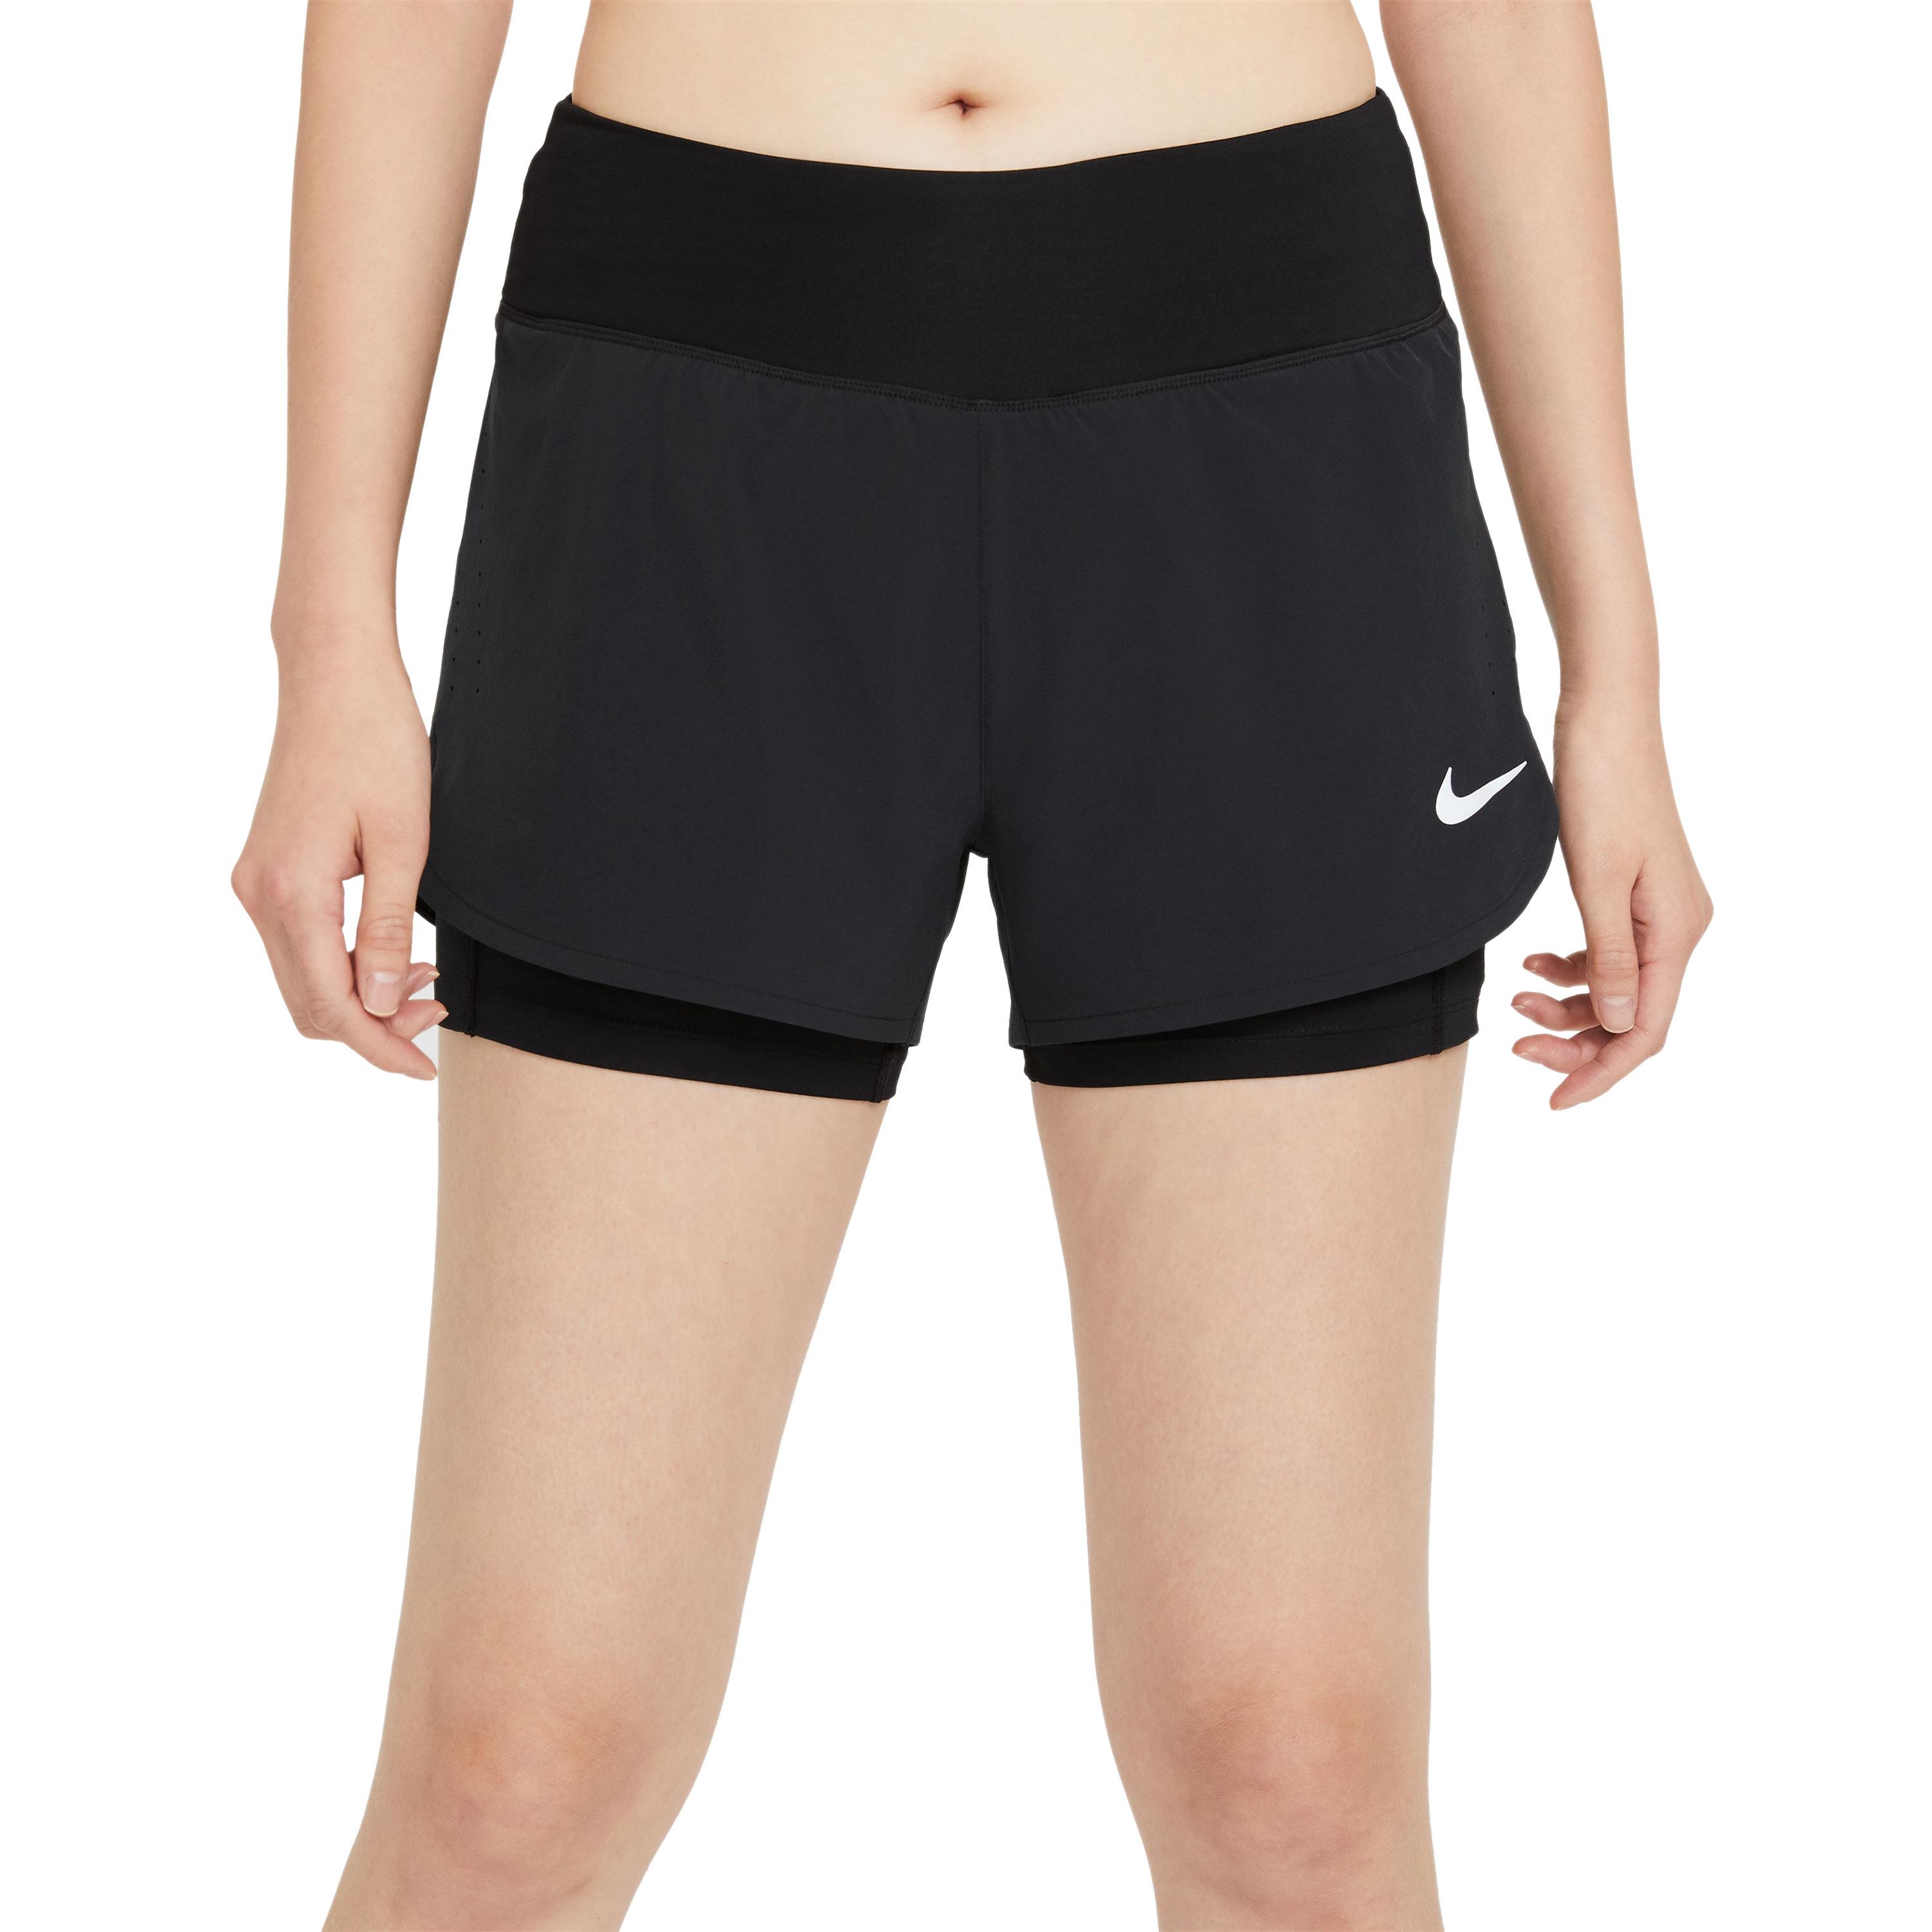 Donker worden Veilig Gietvorm Nike Eclipse hardloopbroek dames zwart